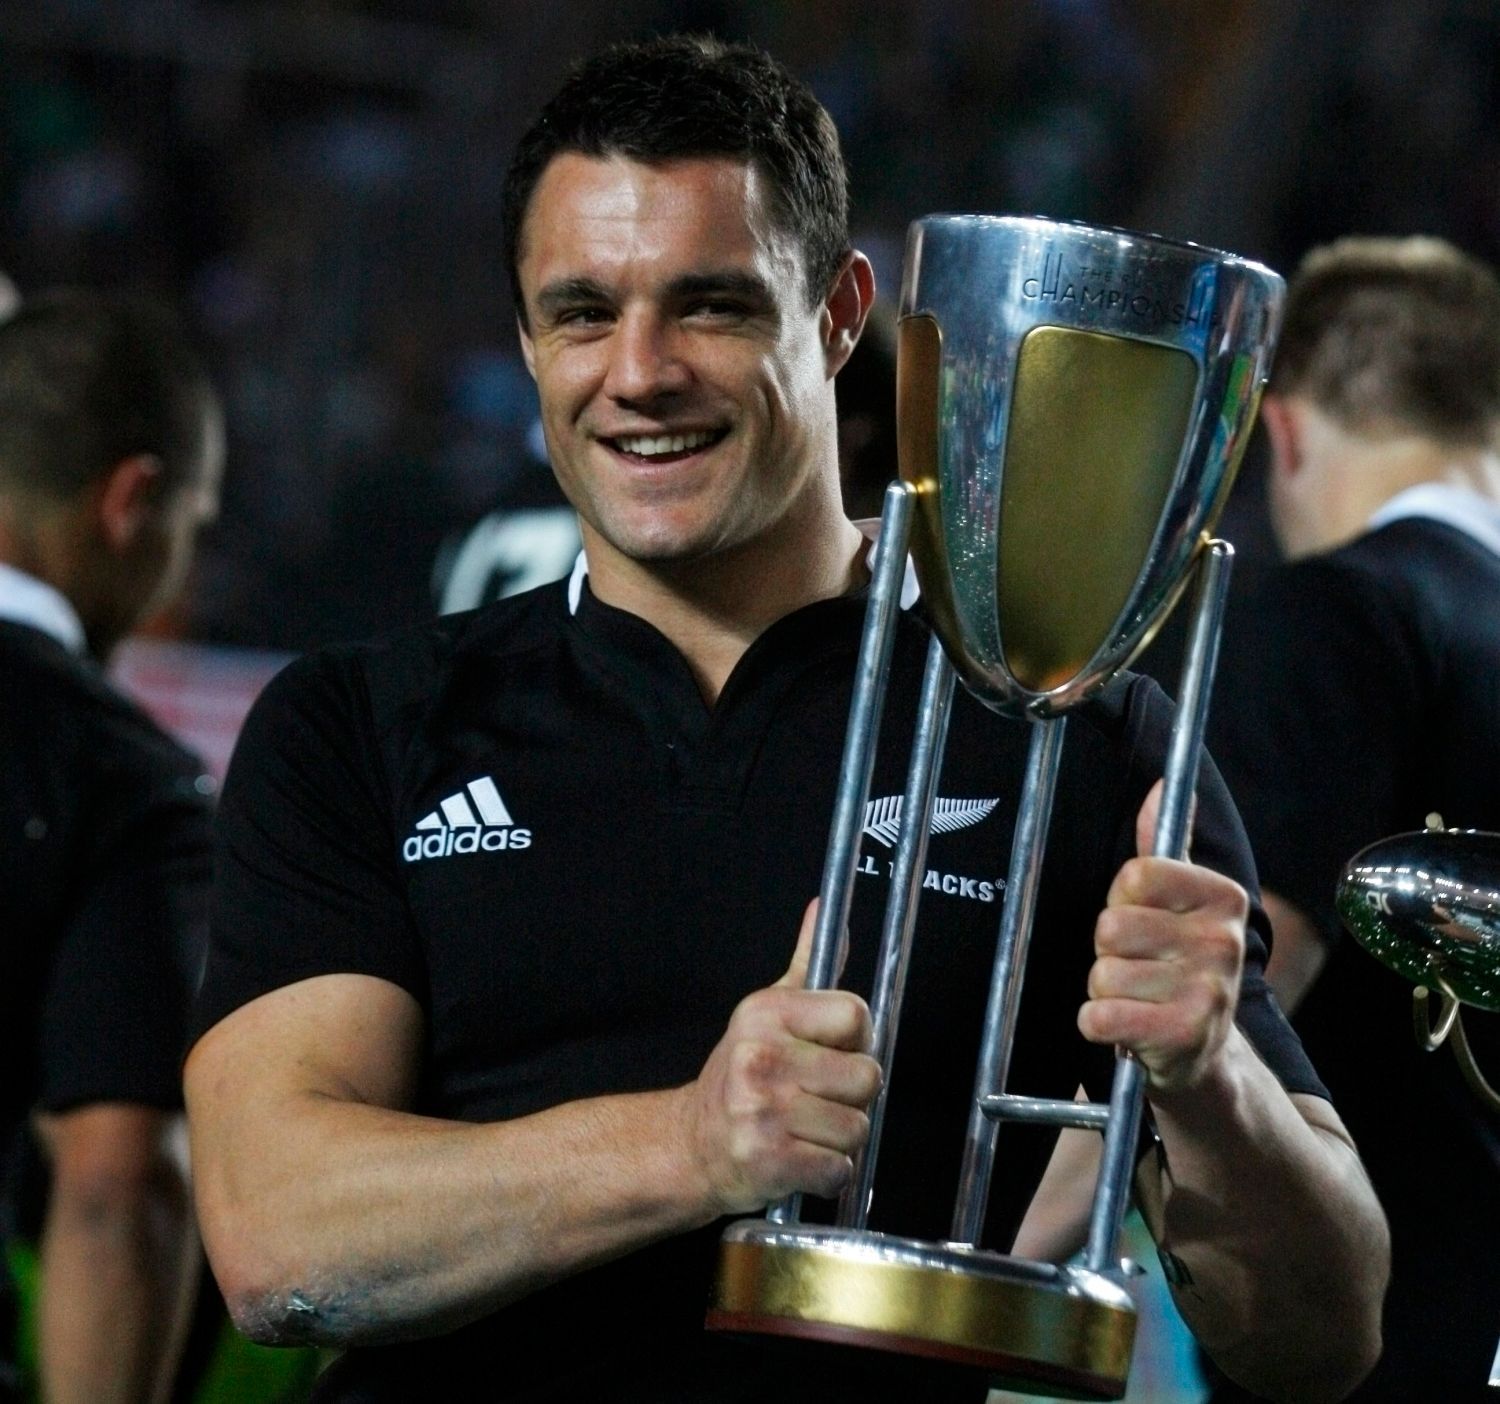 Novozélandští ragbysté "All Blacks" v utkání |Rugby Championship 2012 s Argentinou.